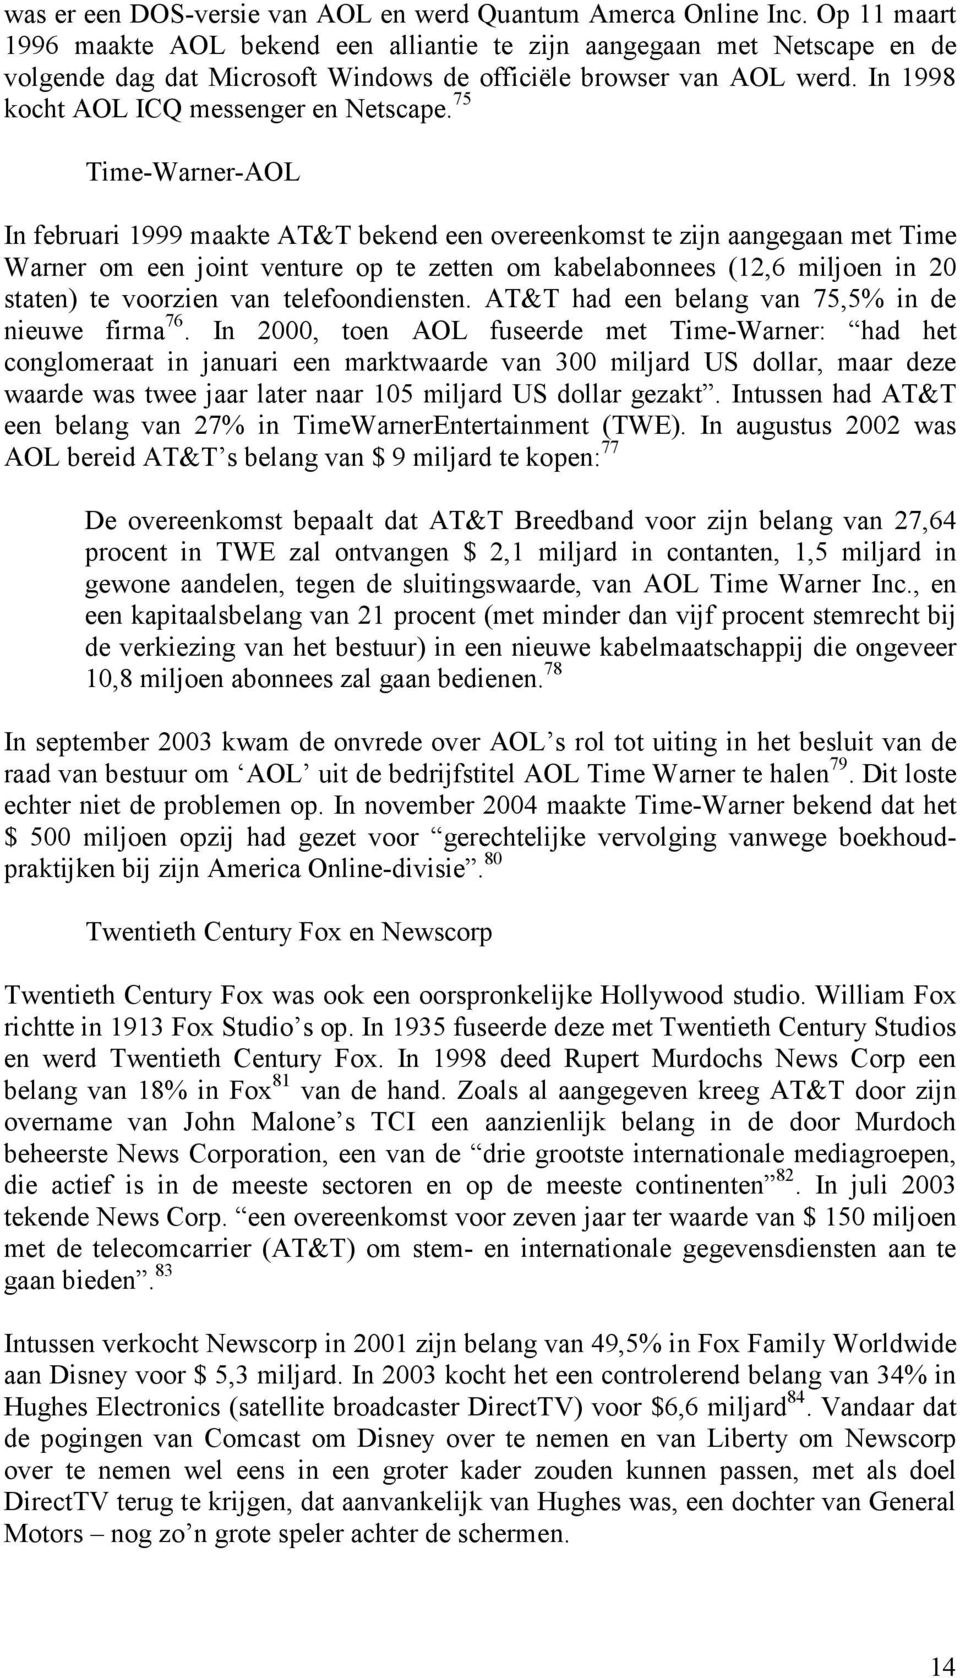 75 Time-Warner-AOL In februari 1999 maakte AT&T bekend een overeenkomst te zijn aangegaan met Time Warner om een joint venture op te zetten om kabelabonnees (12,6 miljoen in 20 staten) te voorzien